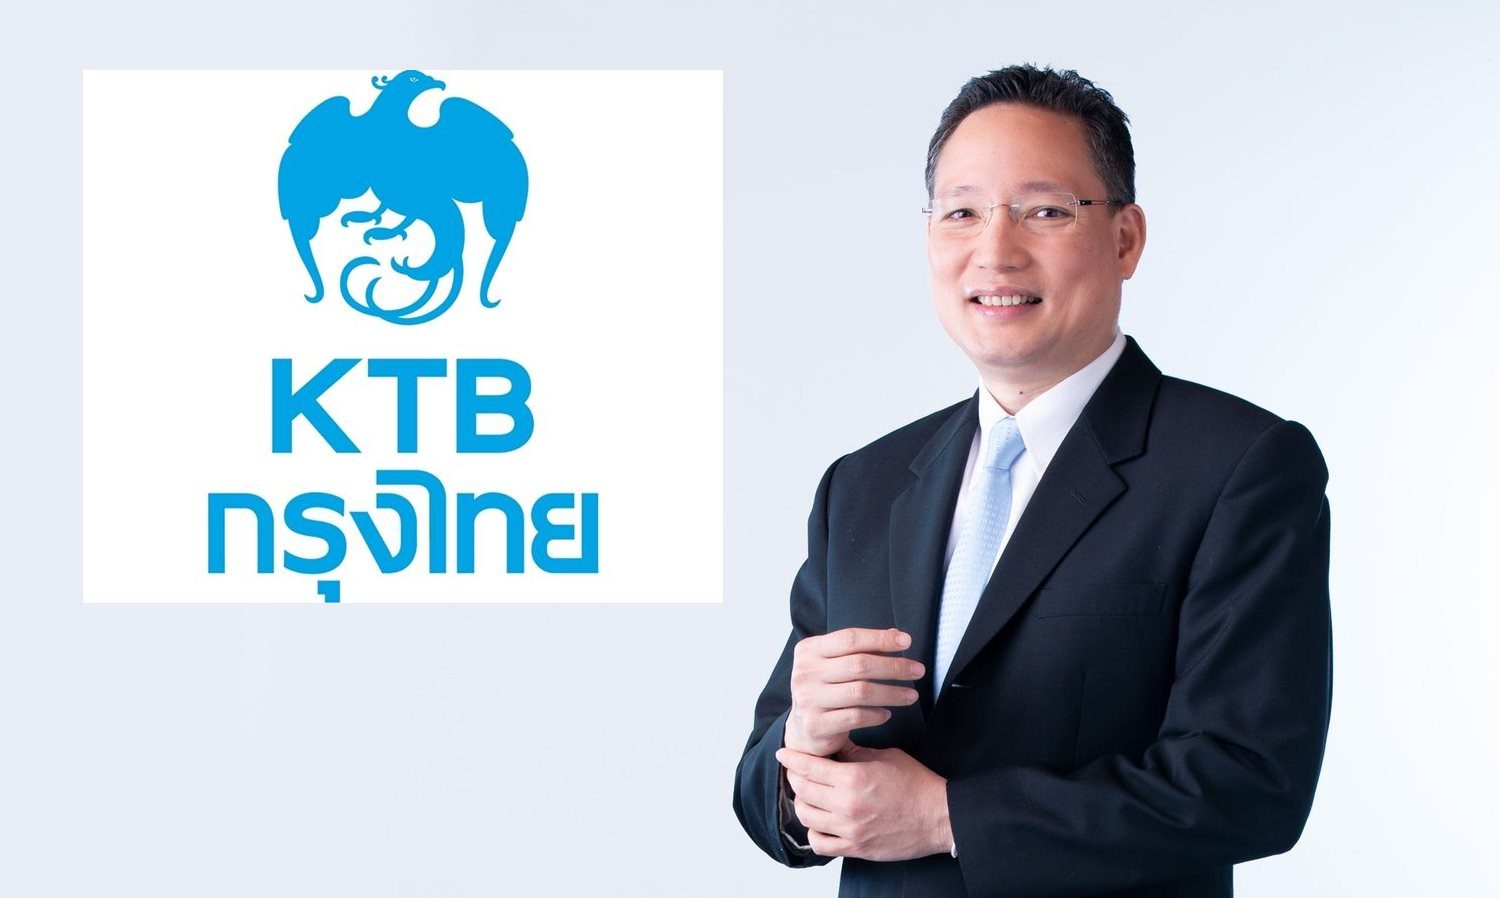 กรุงไทย หนุนนิติบุคคลผูกพร้อมเพย์ผ่าน Krungthai Corporate Online  ไม่มีค่าธรรมเนียม - Pantip